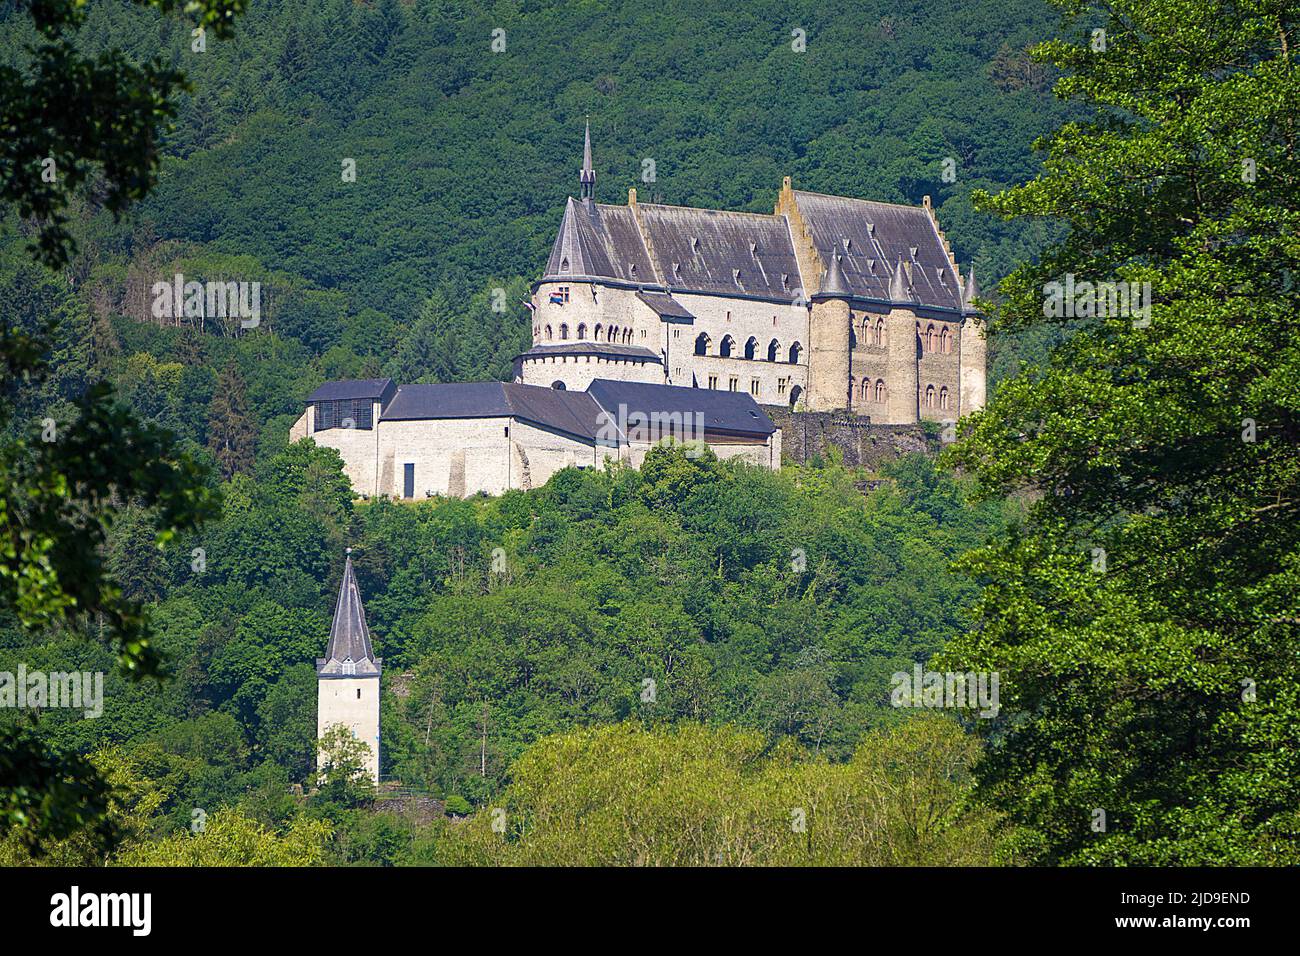 Château de Vianden, canton de Vianden, Grand-Duché de Luxembourg, Europe Banque D'Images